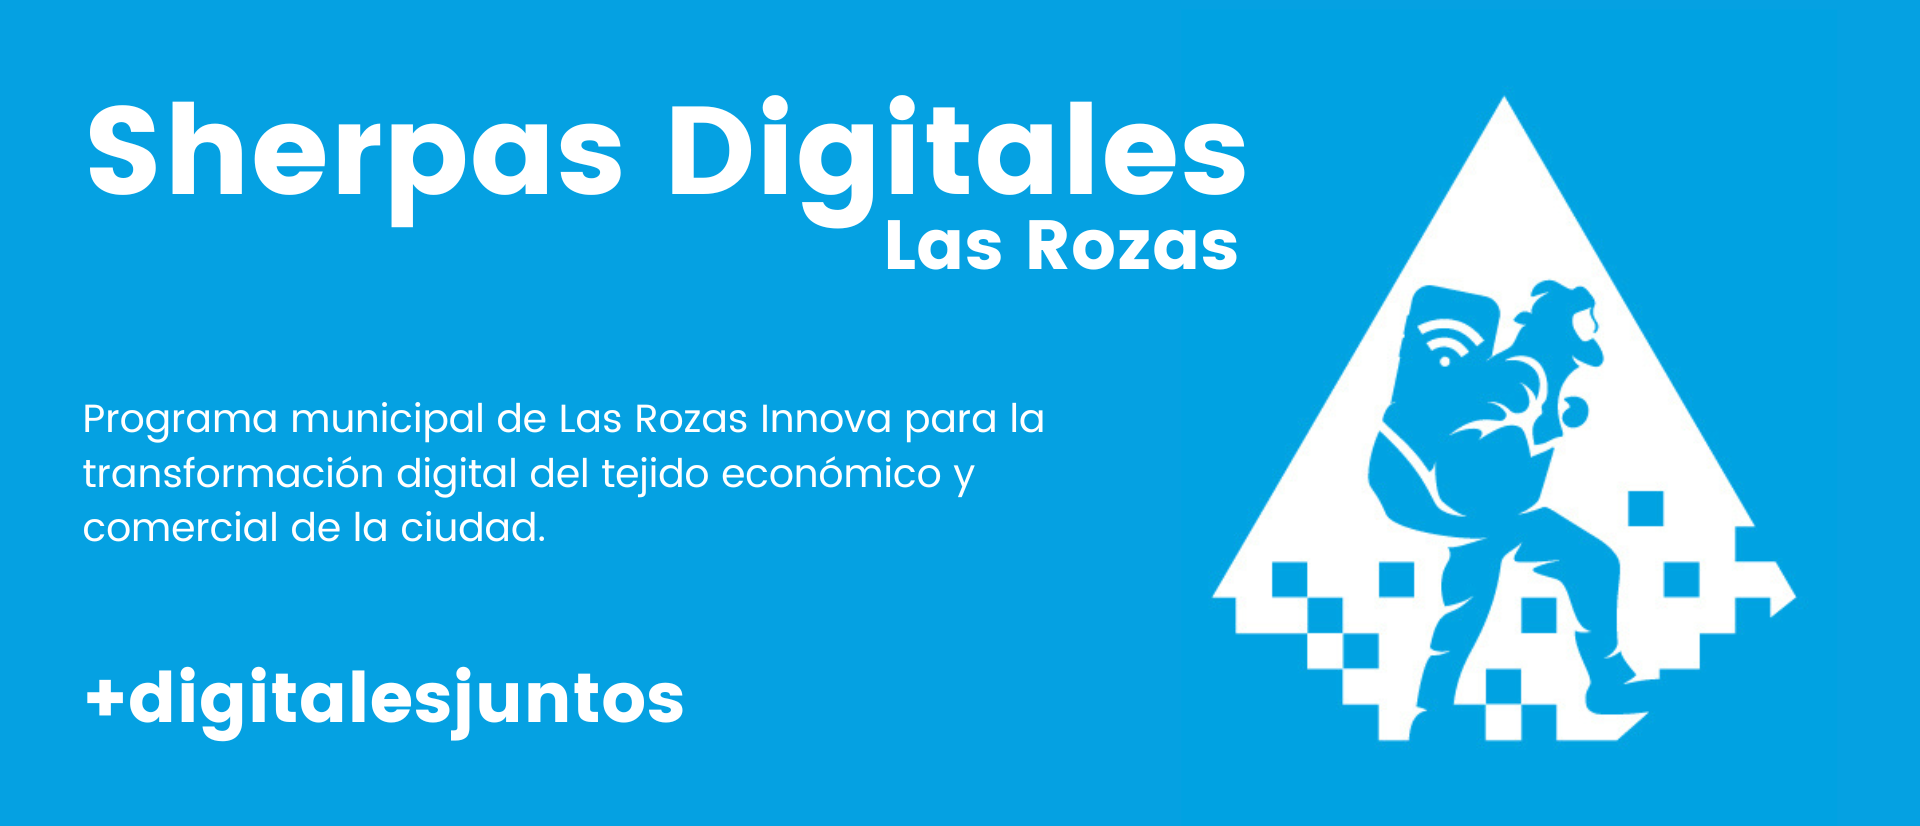 Las Rozas lanza su Programa de Sherpas Digitales 2023 - La Viña